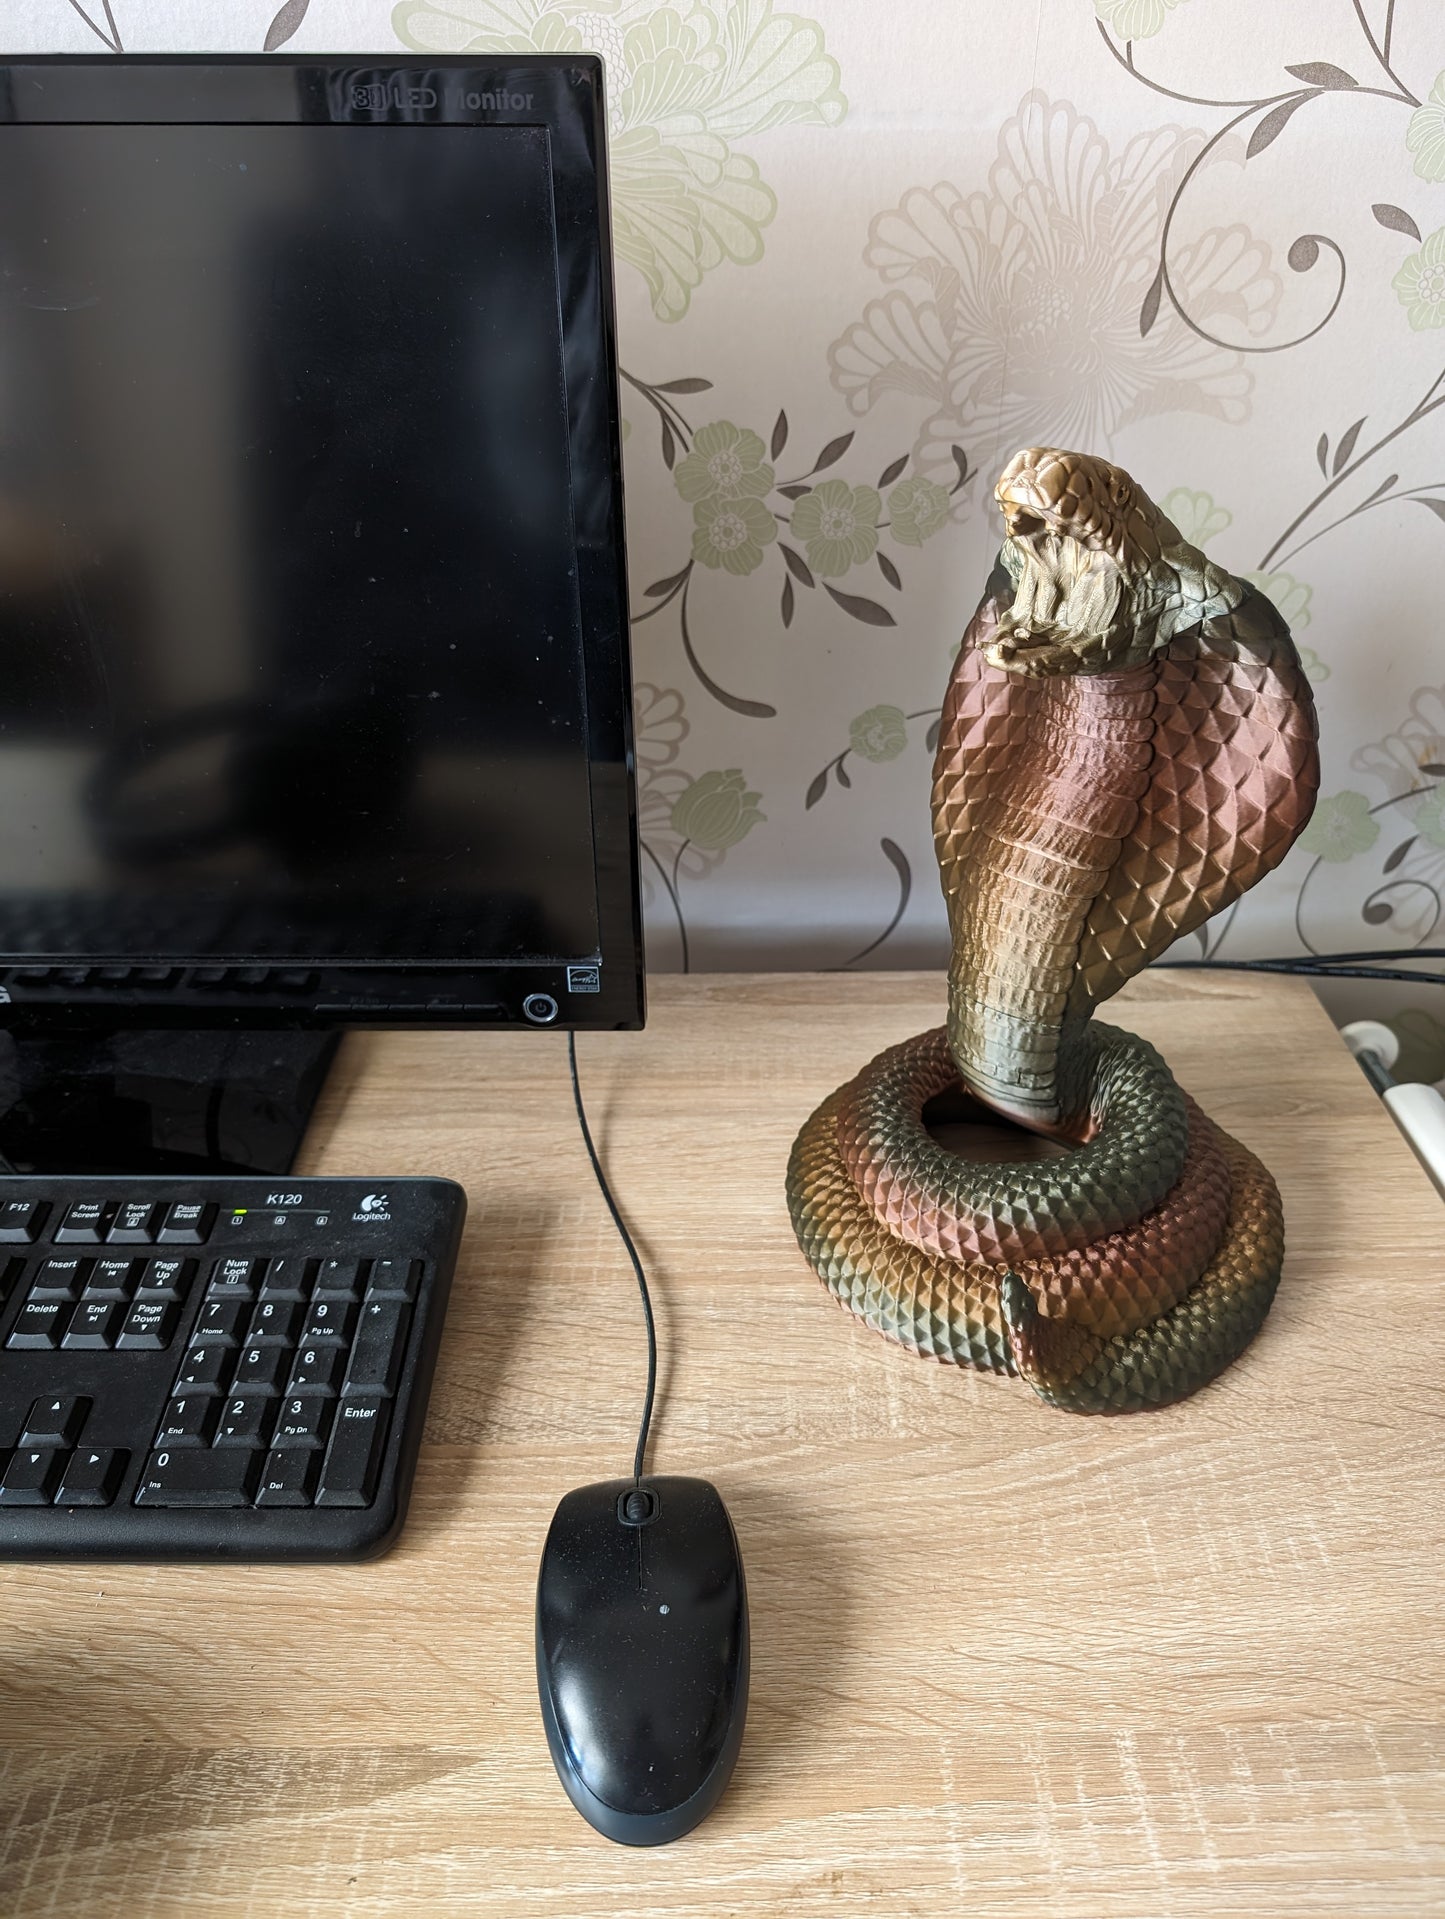 Cobra snake headphone holder on desk from front angle